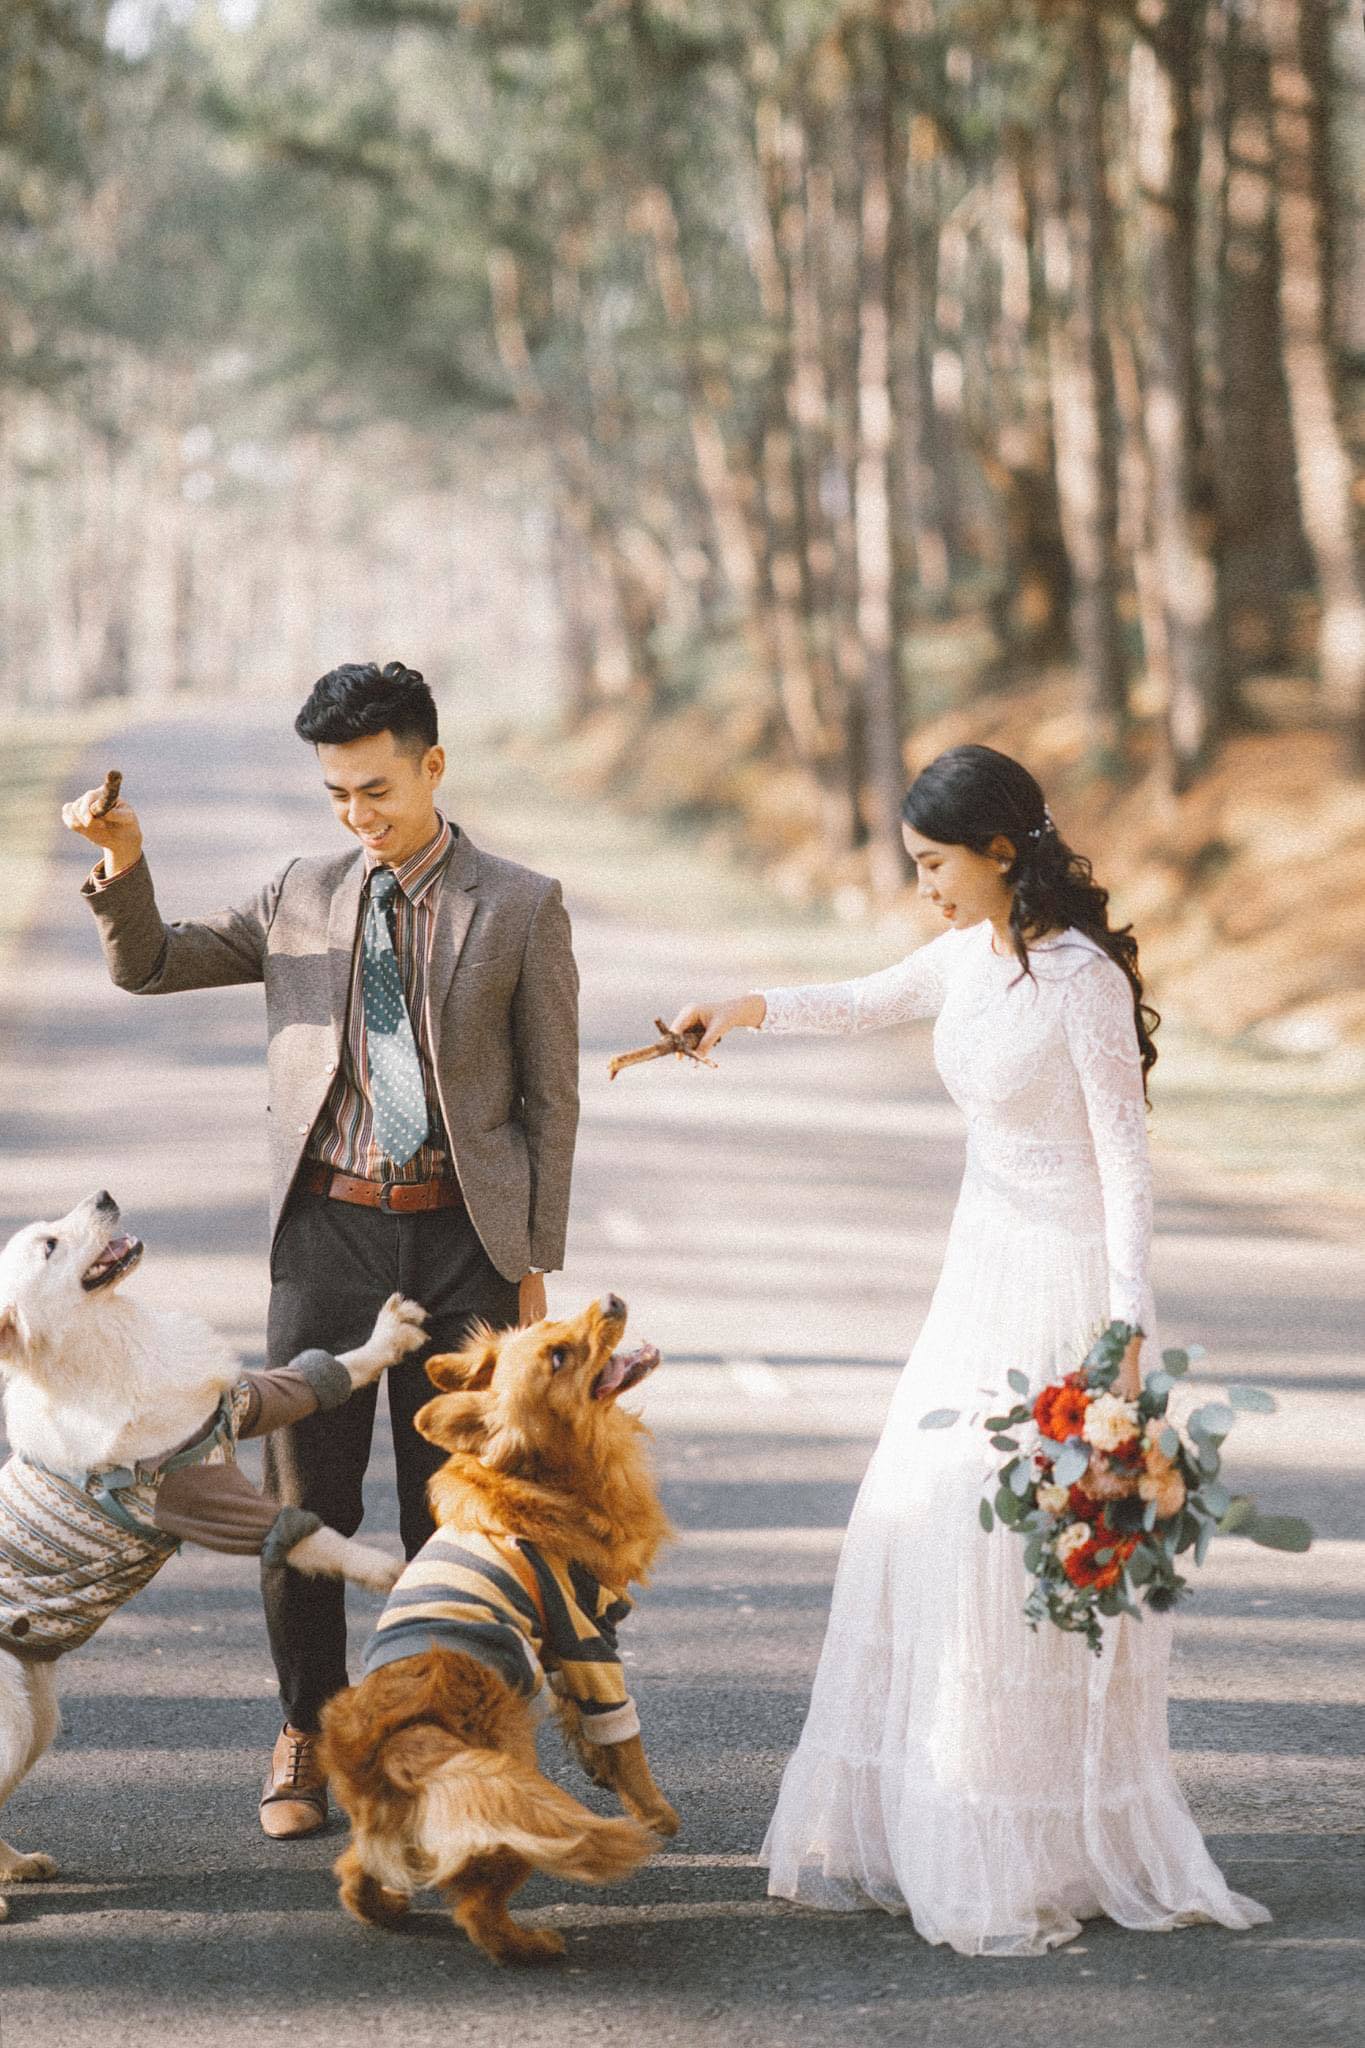 Bộ ảnh cưới với cún cưng: Với sự xuất hiện của chú chó cưng xinh đẹp, bộ ảnh cưới của bạn sẽ trở nên đáng yêu và đầy ý nghĩa hơn bao giờ hết. Đừng bỏ lỡ cơ hội để tung tăng cùng thú cưng và giữ lại những khoảnh khắc đẹp nhất cùng studio của chúng tôi.